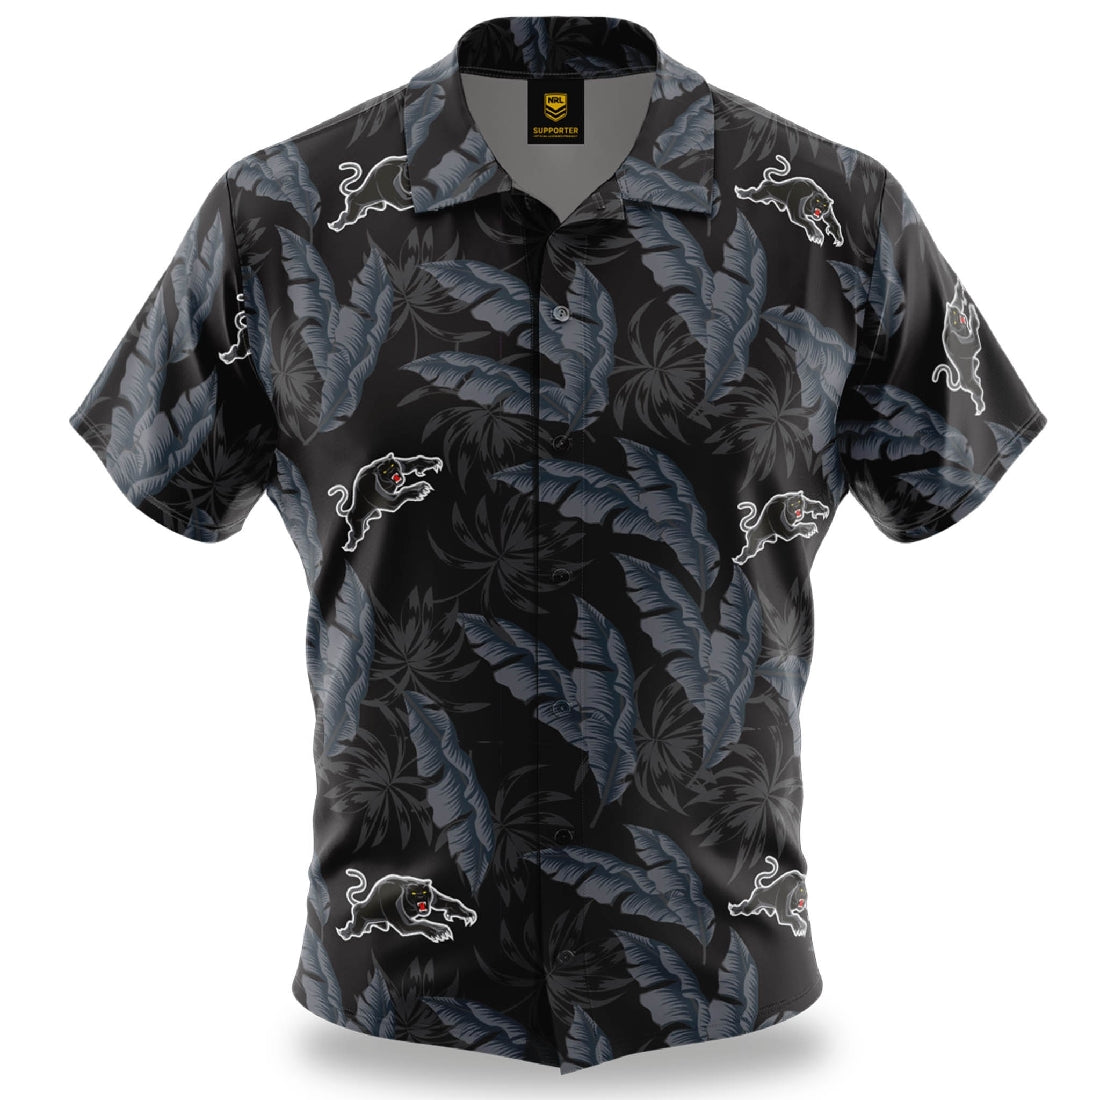 Penrith Panthers Hawaiian Shirt